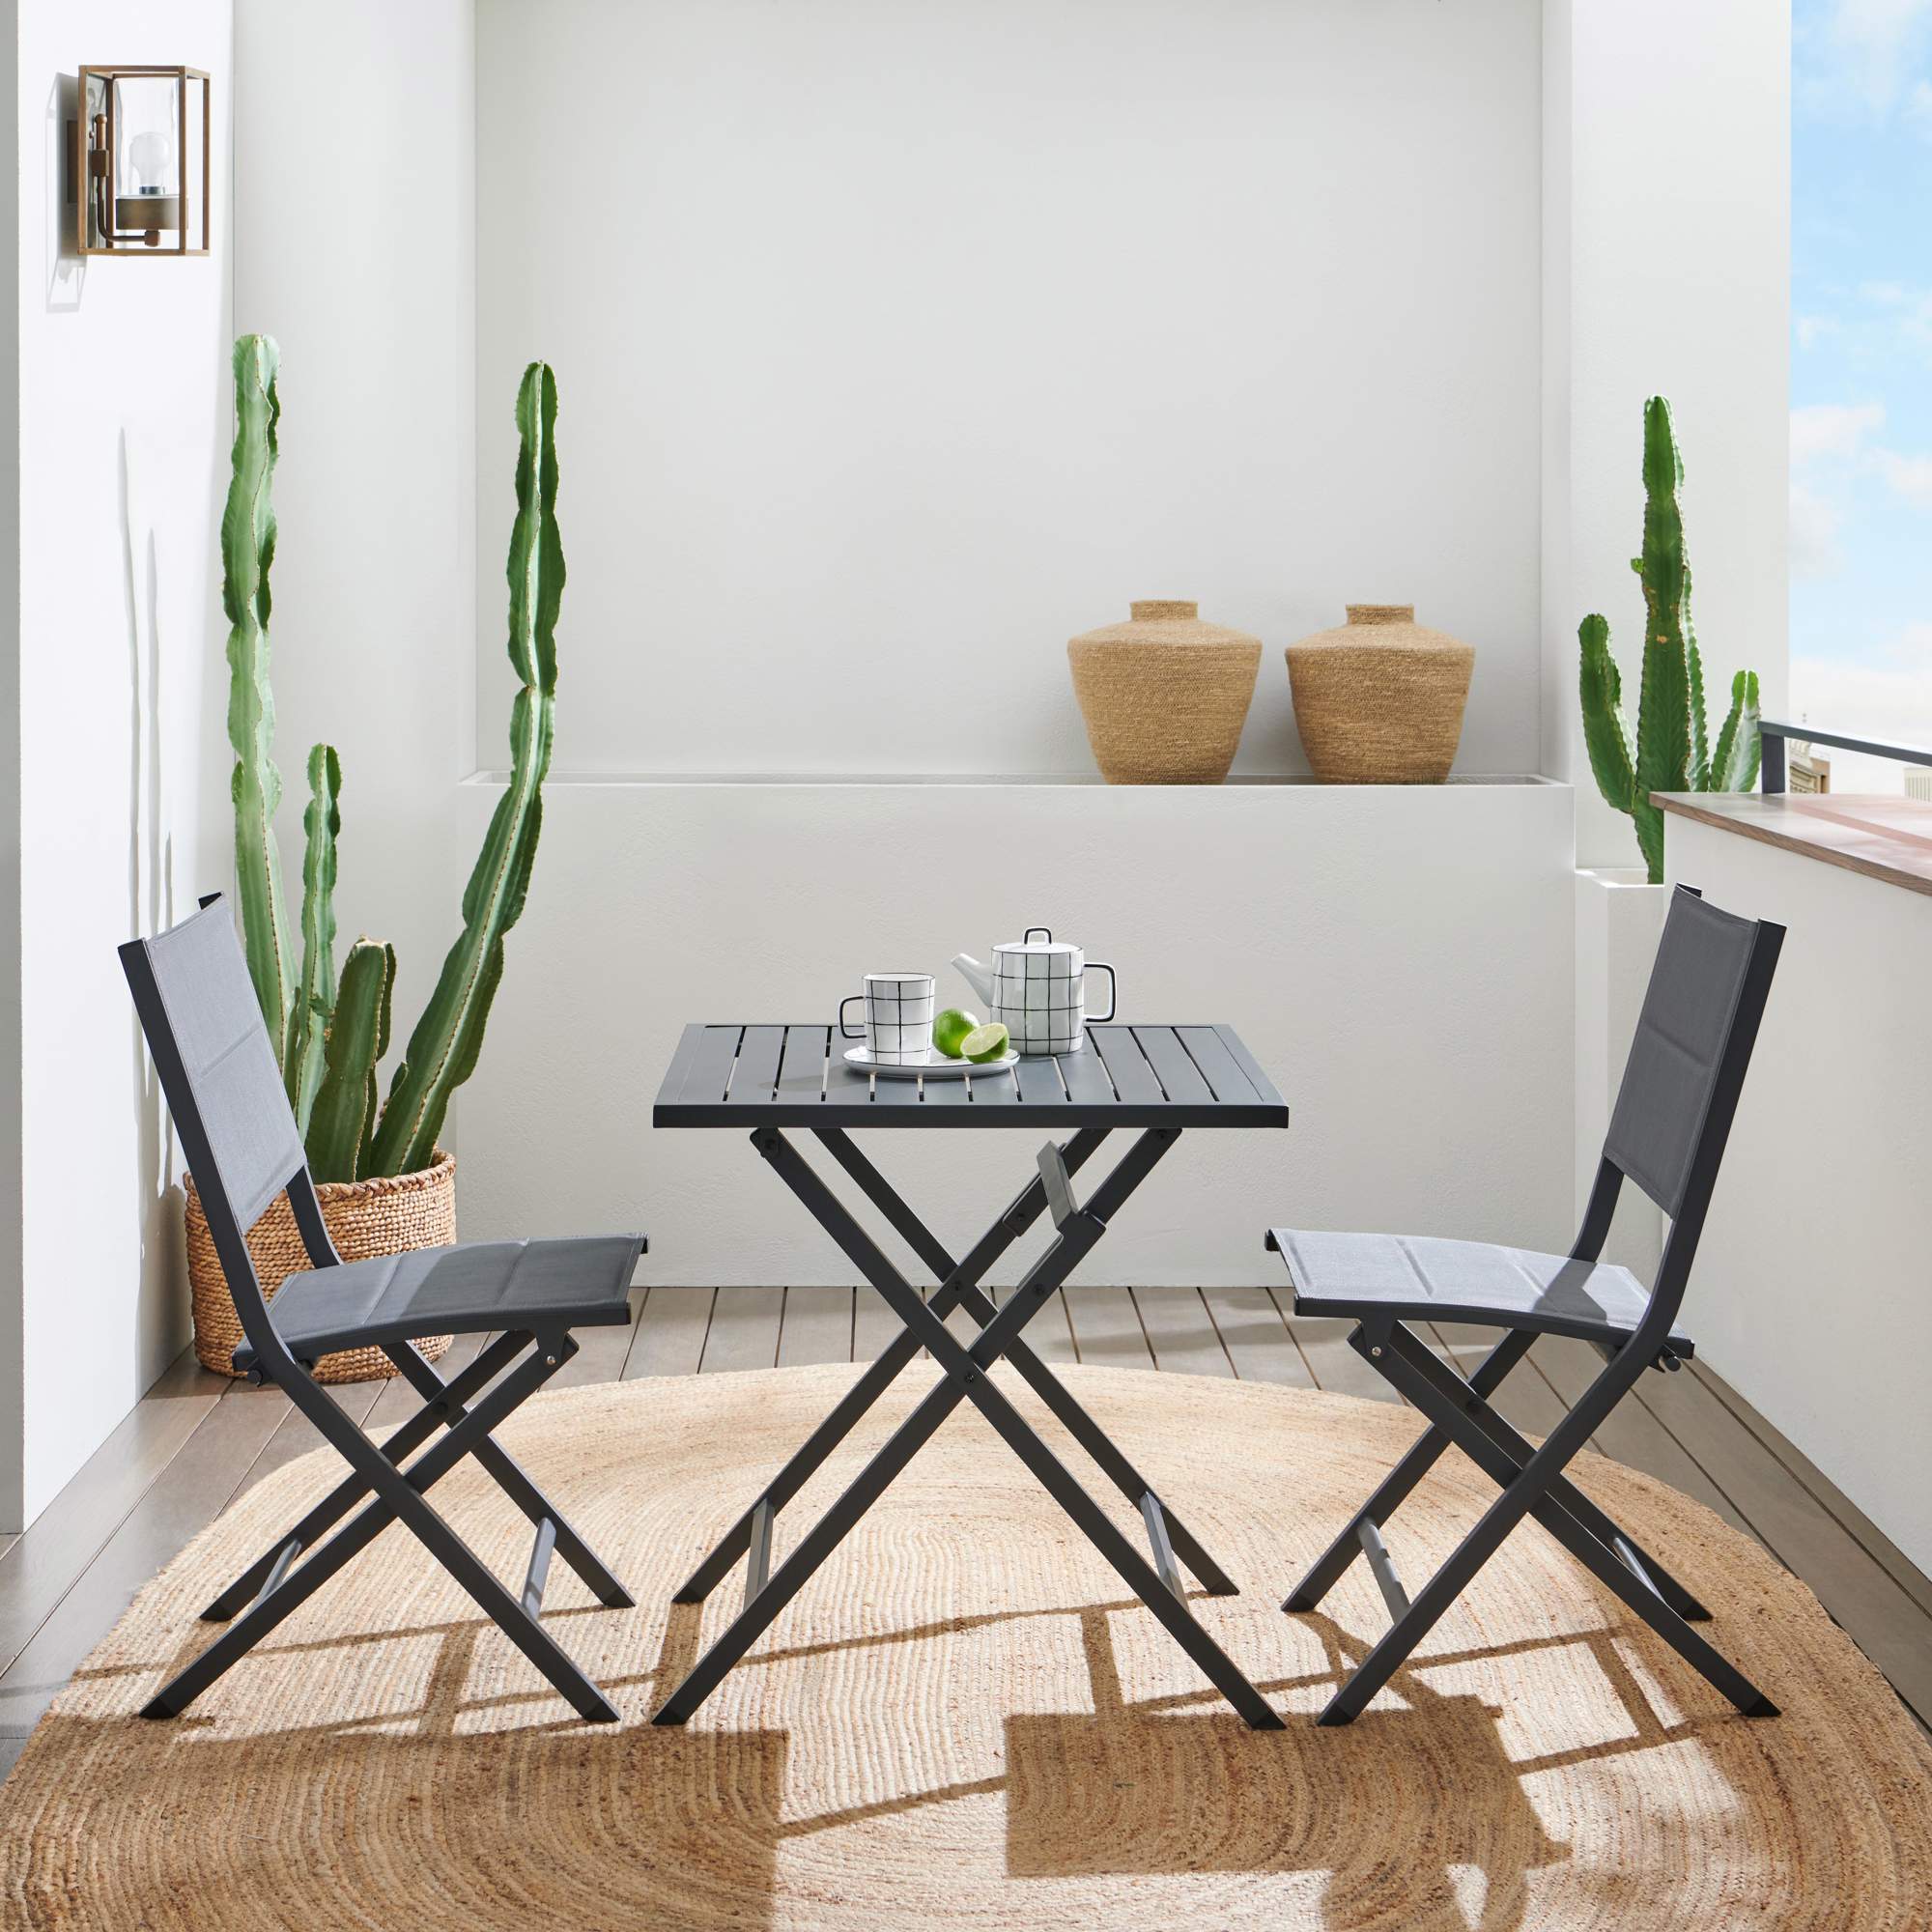 Terraza pequeña con mesa y sillas plegables en color oscuro.